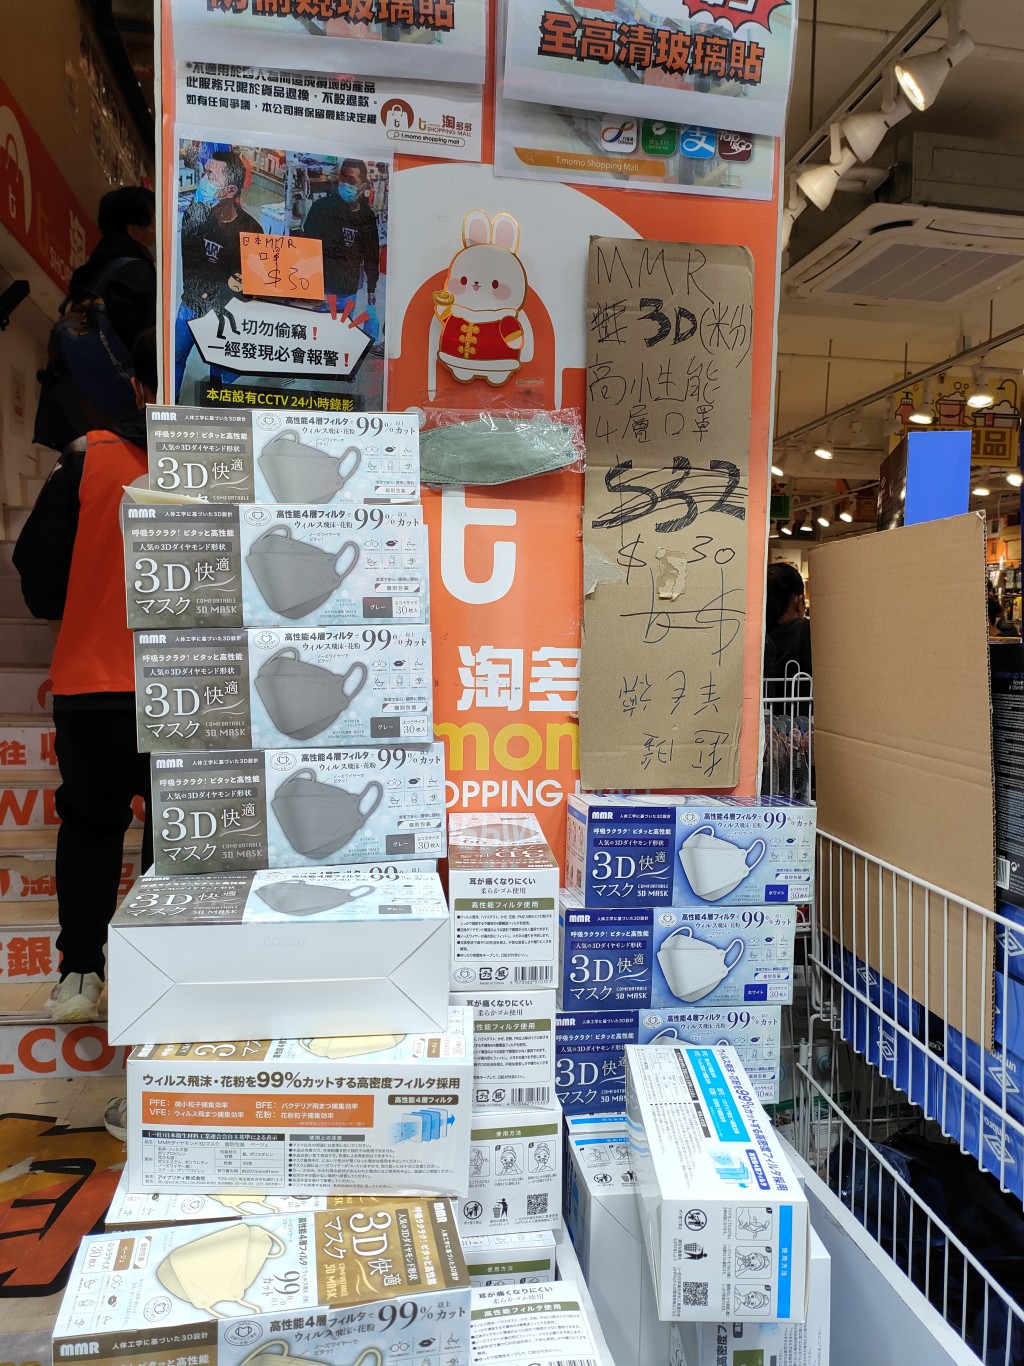 一盒30个日本3D快适口罩，由每盒32元减至30元。(莫家文摄)